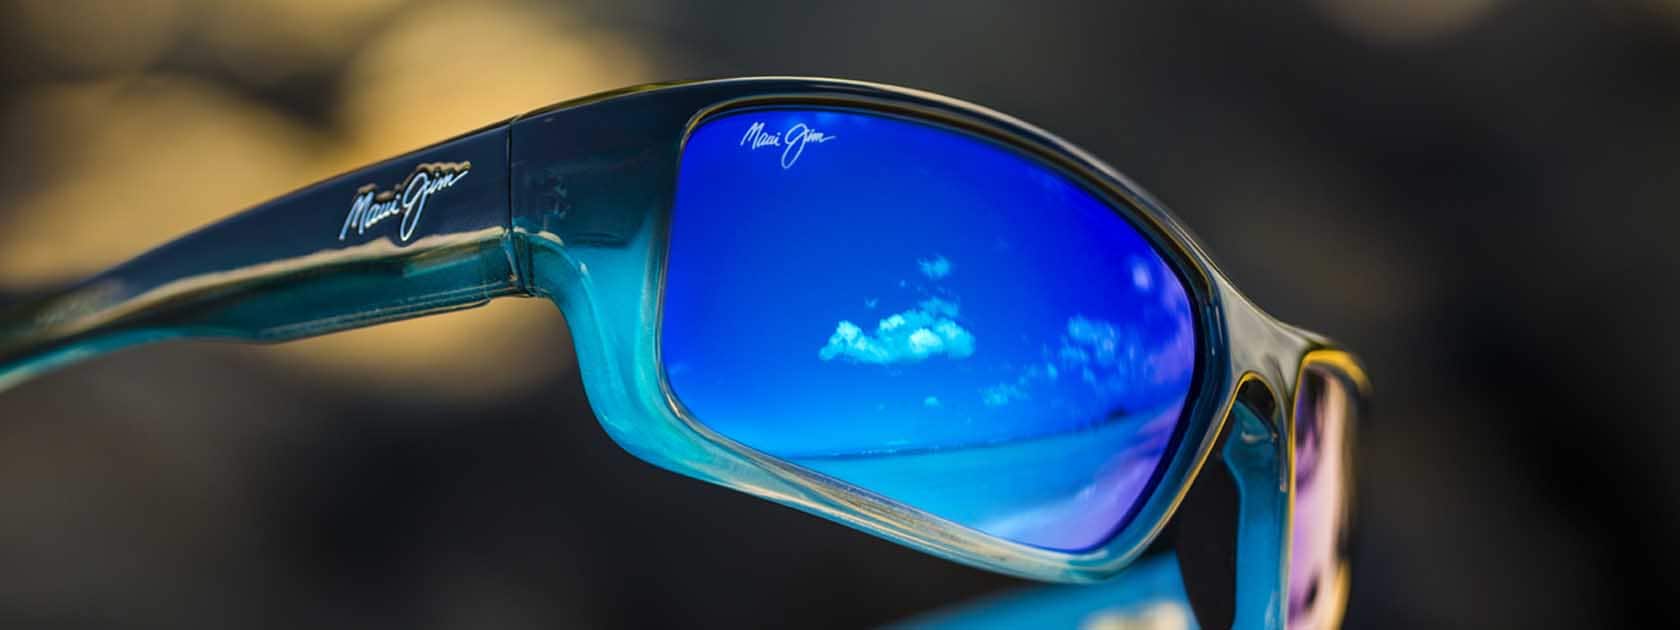 blue fade sunglass frame with blue lenses